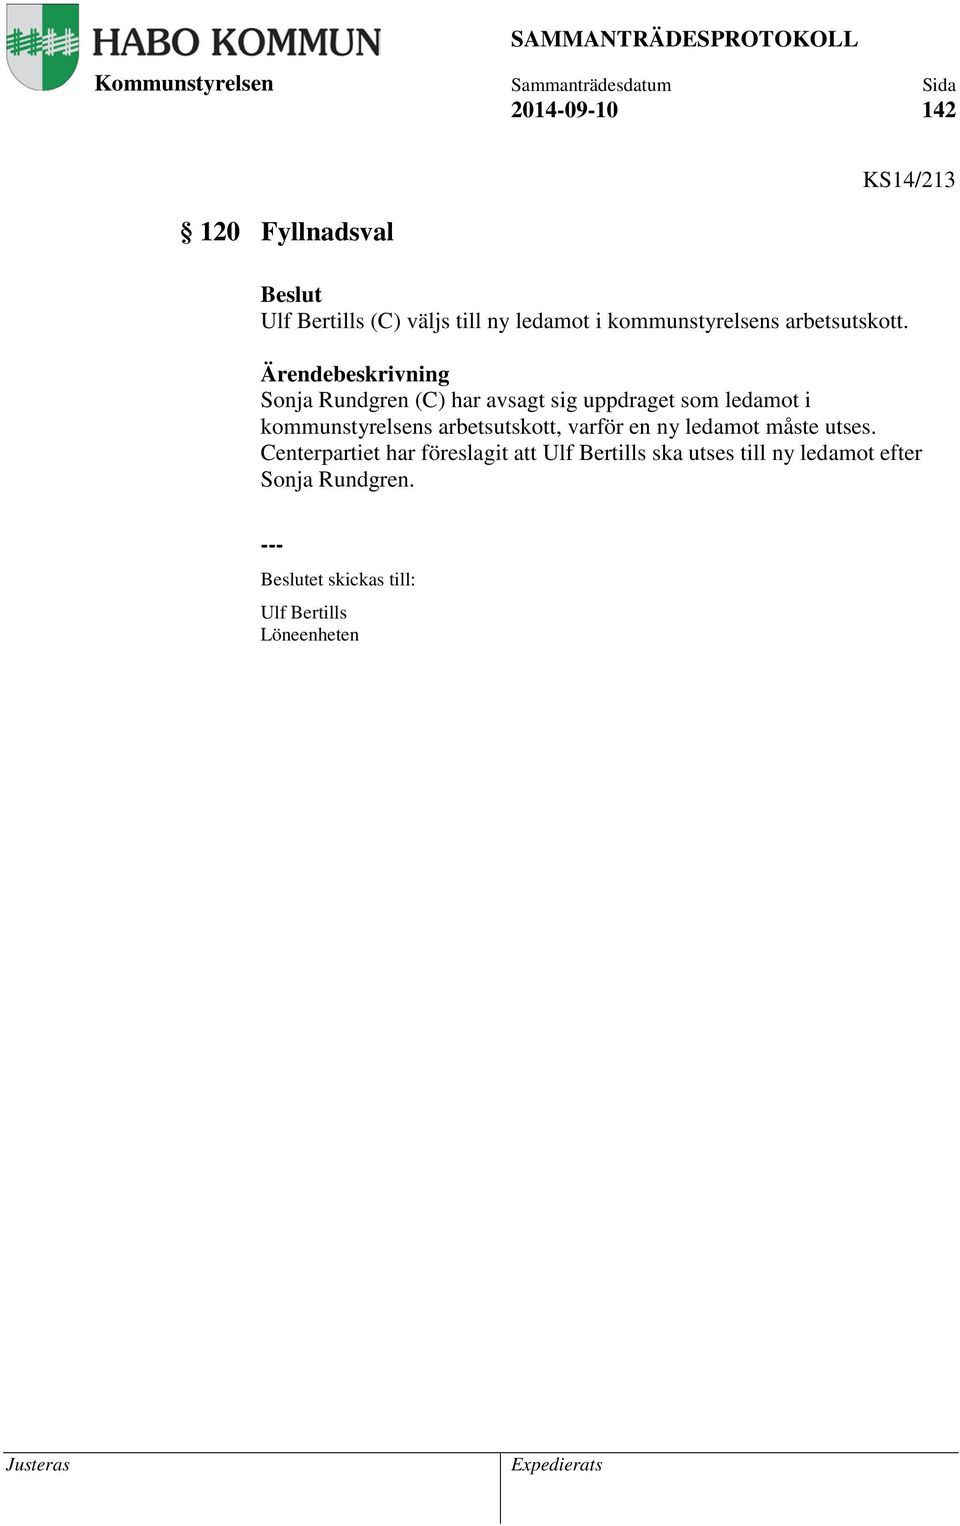 Sonja Rundgren (C) har avsagt sig uppdraget som ledamot i kommunstyrelsens arbetsutskott, varför